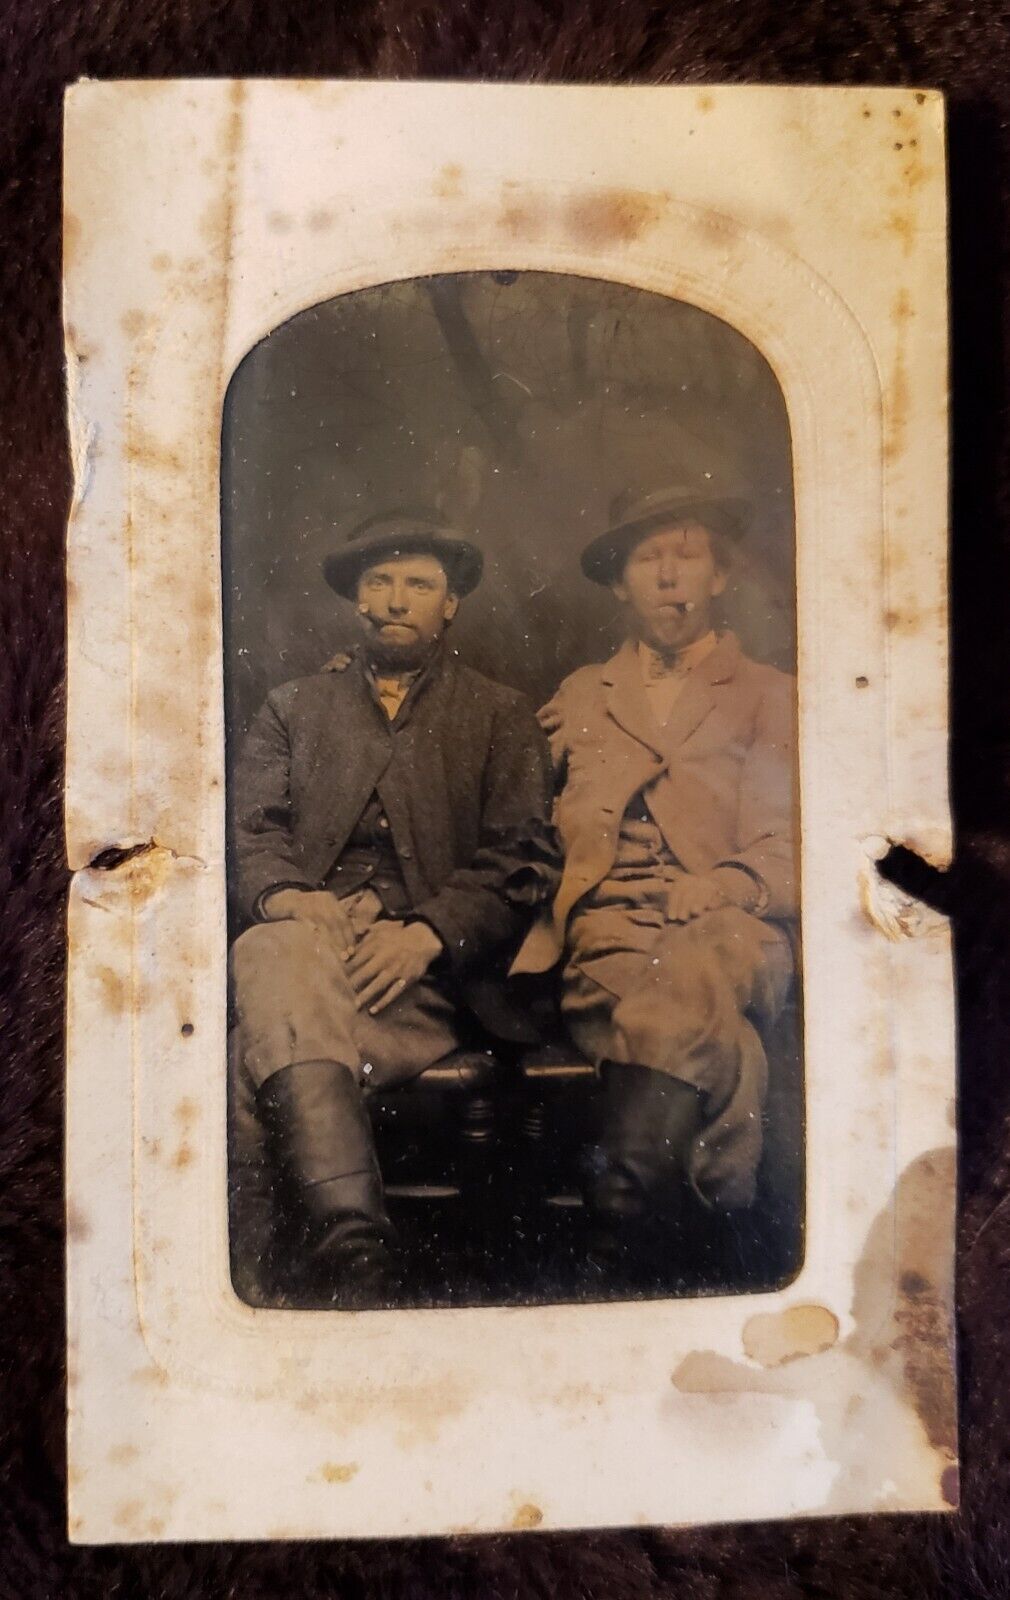 Tintype of Two Western Looking Gentlemen Gangsters. Smoking Cigars. 